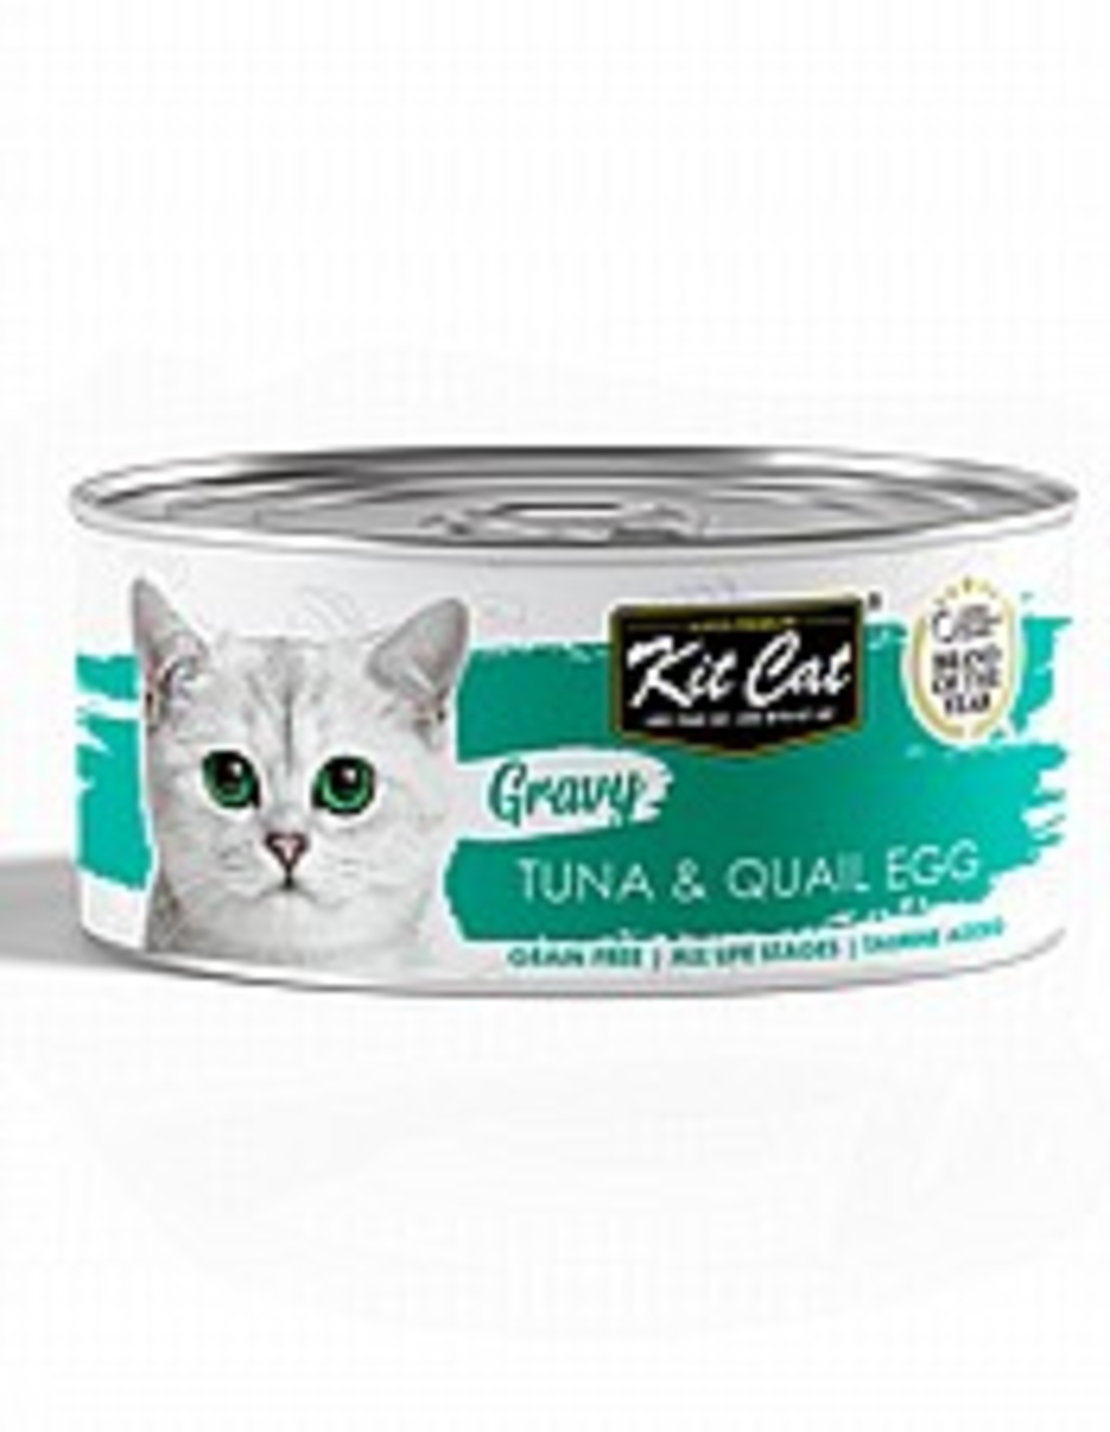 קיט קט טונה וביצי שליו ברוטב | kit cat tuna & quail egg